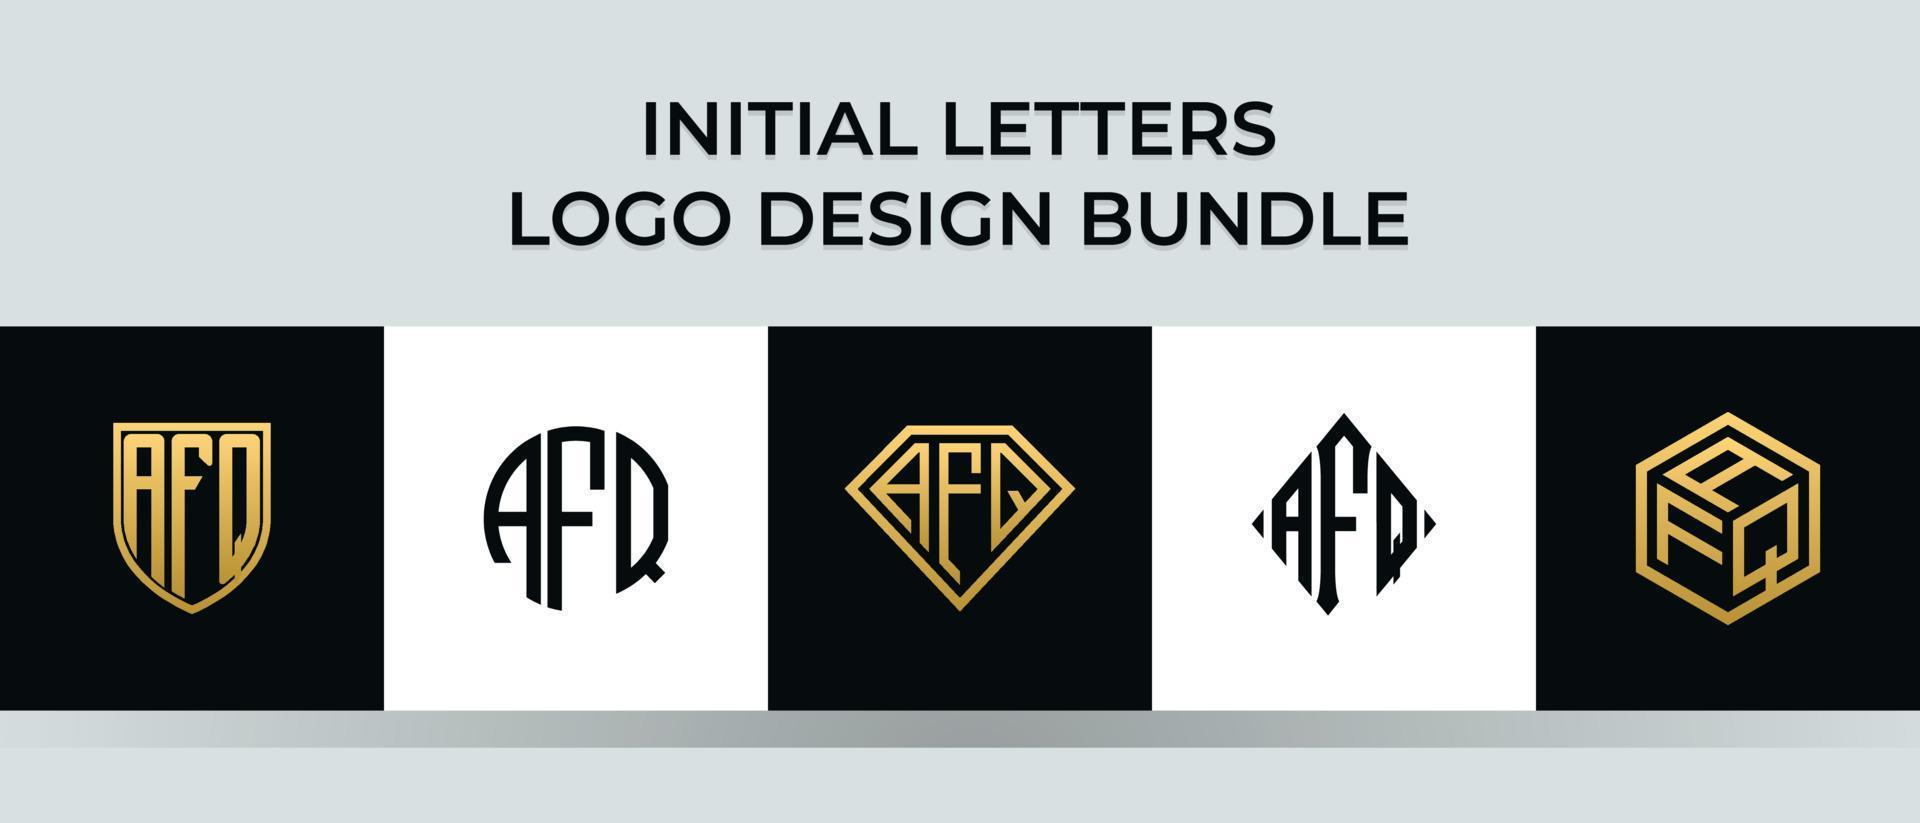 Anfangsbuchstaben afq Logo Designs Bundle vektor